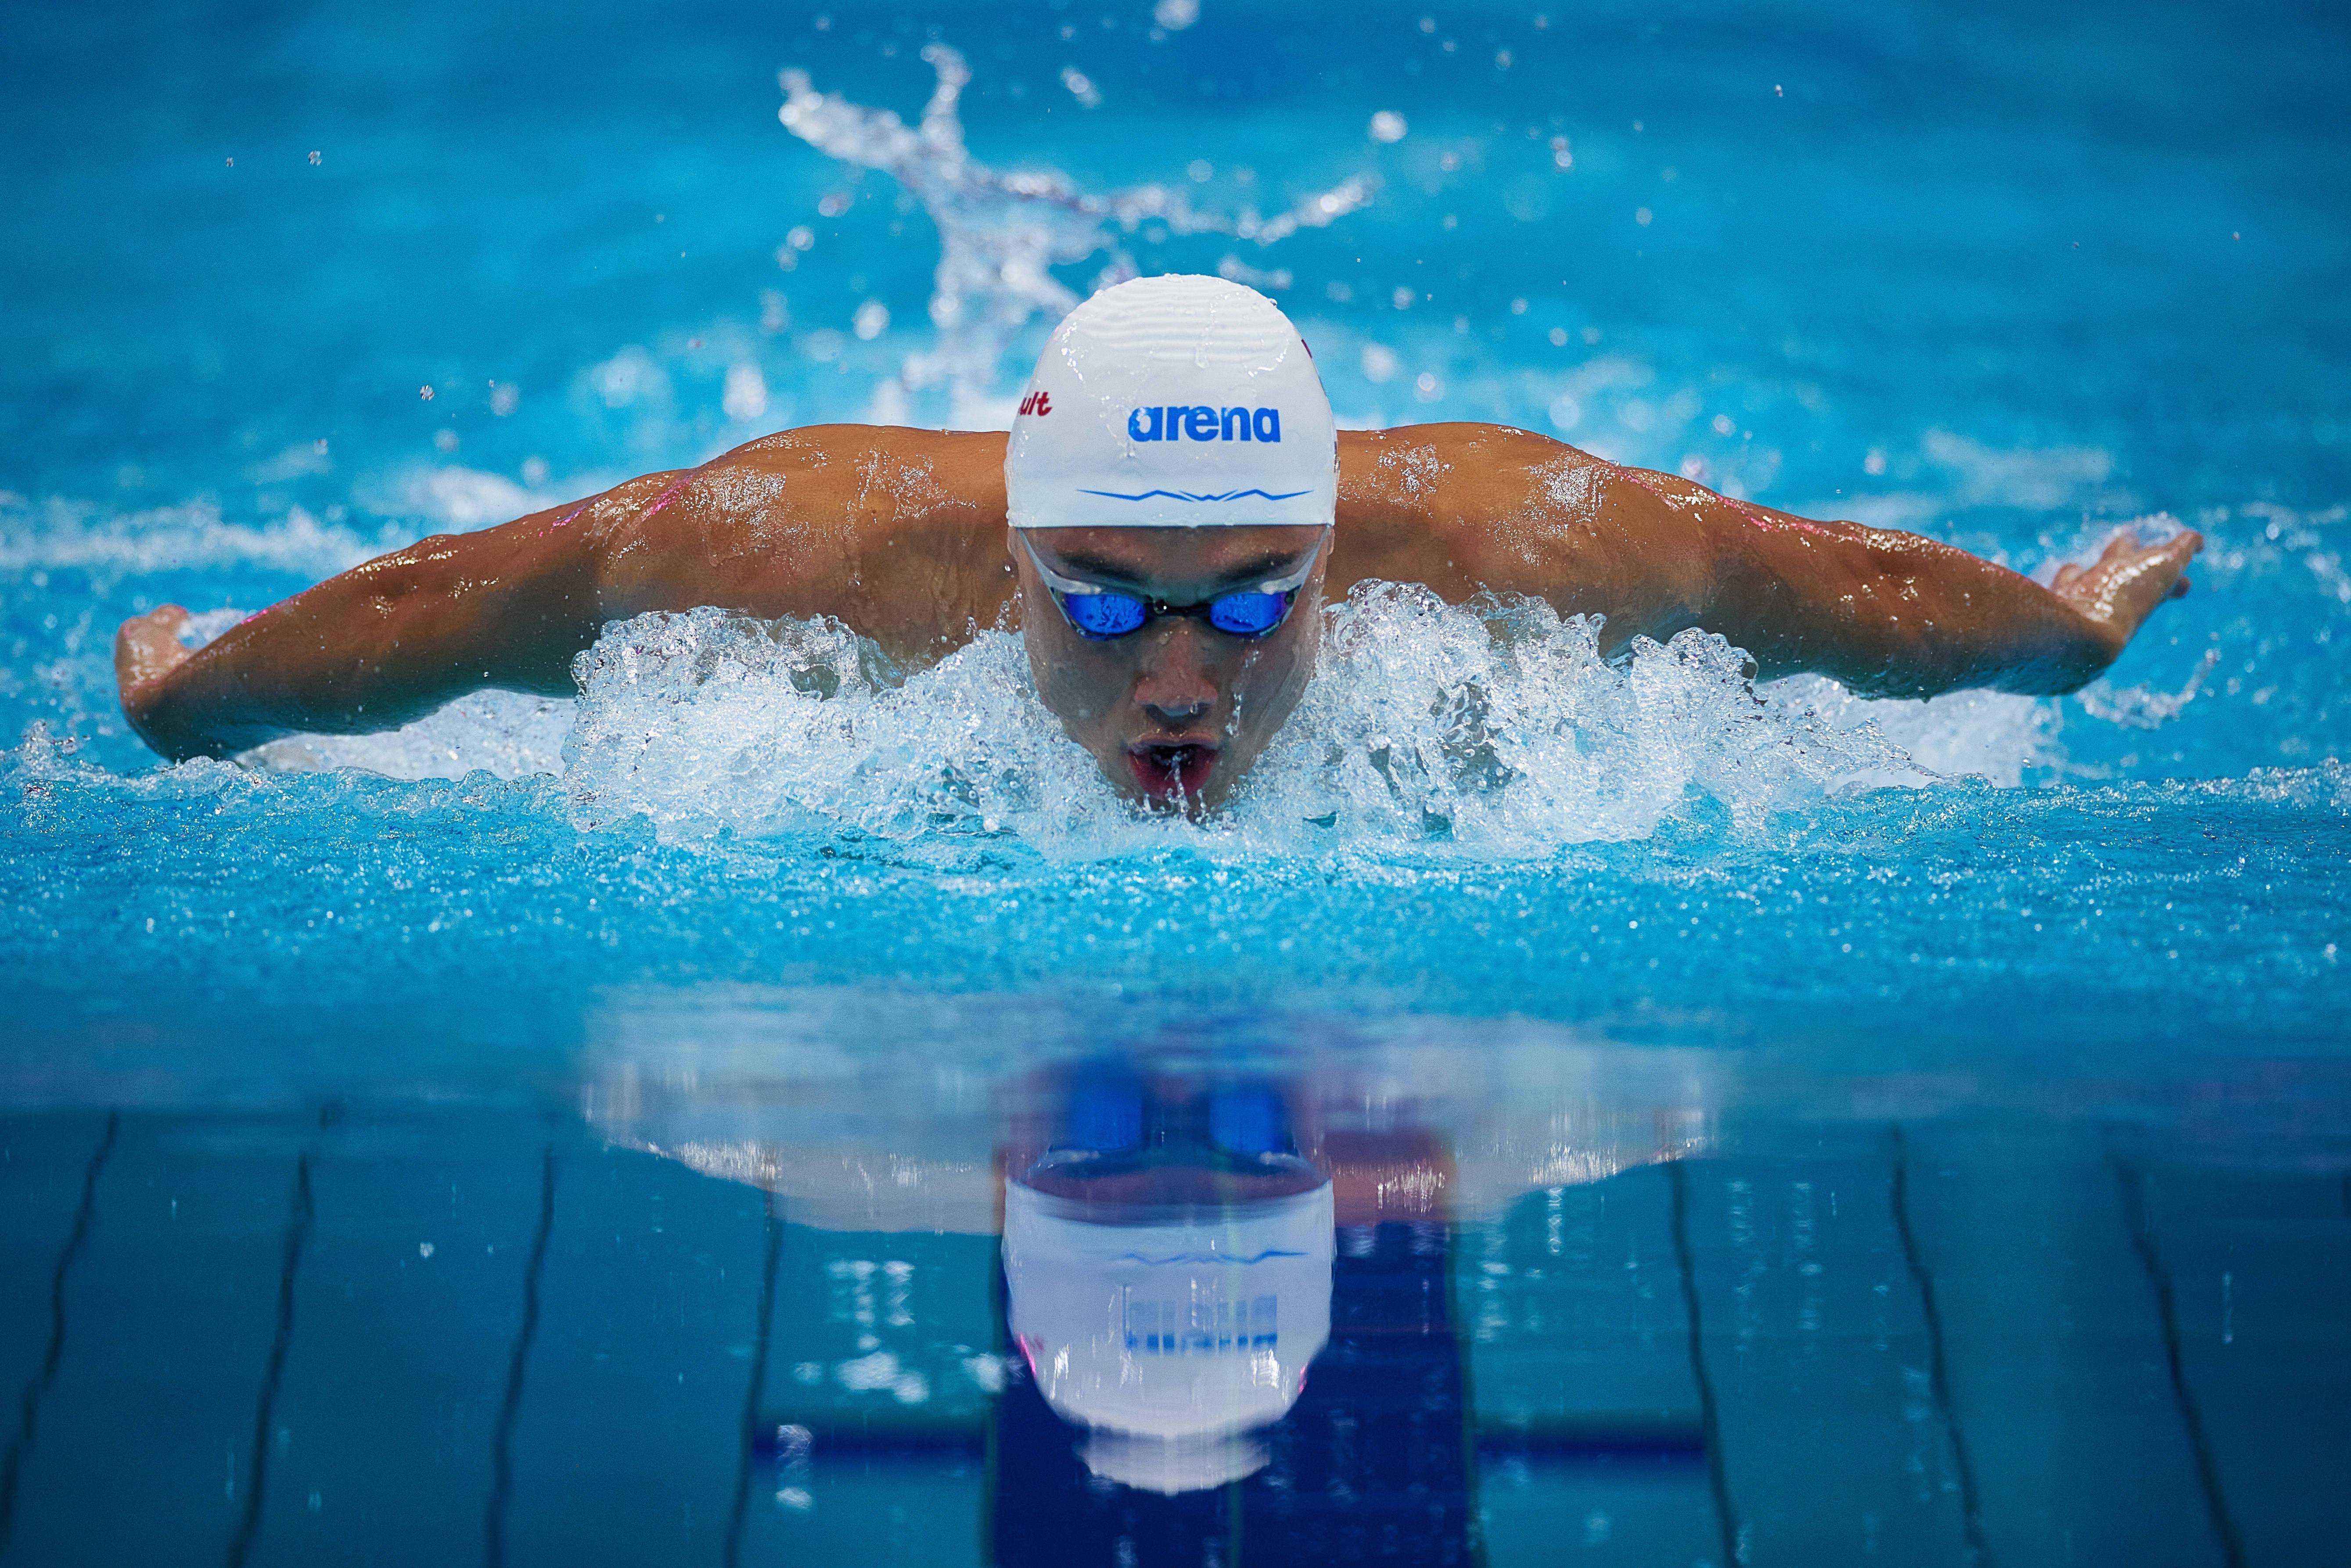 游泳世锦赛匈牙利选手打破男子200米蝶泳世界纪录